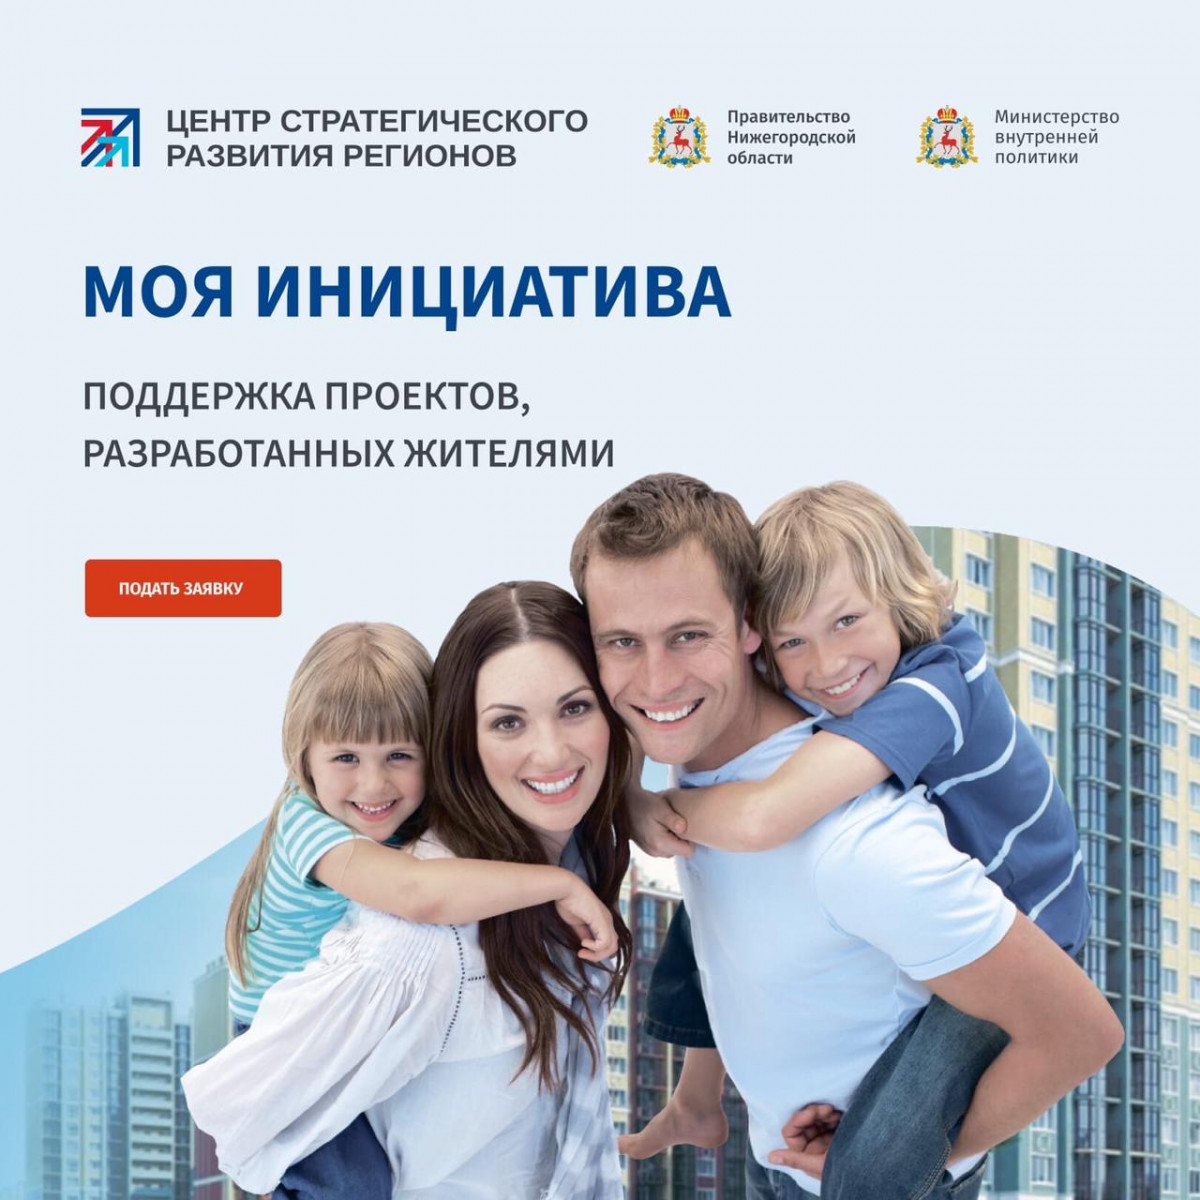 В Нижнем Новгороде продолжается прием заявок на участие в конкурсе «Моя инициатива»